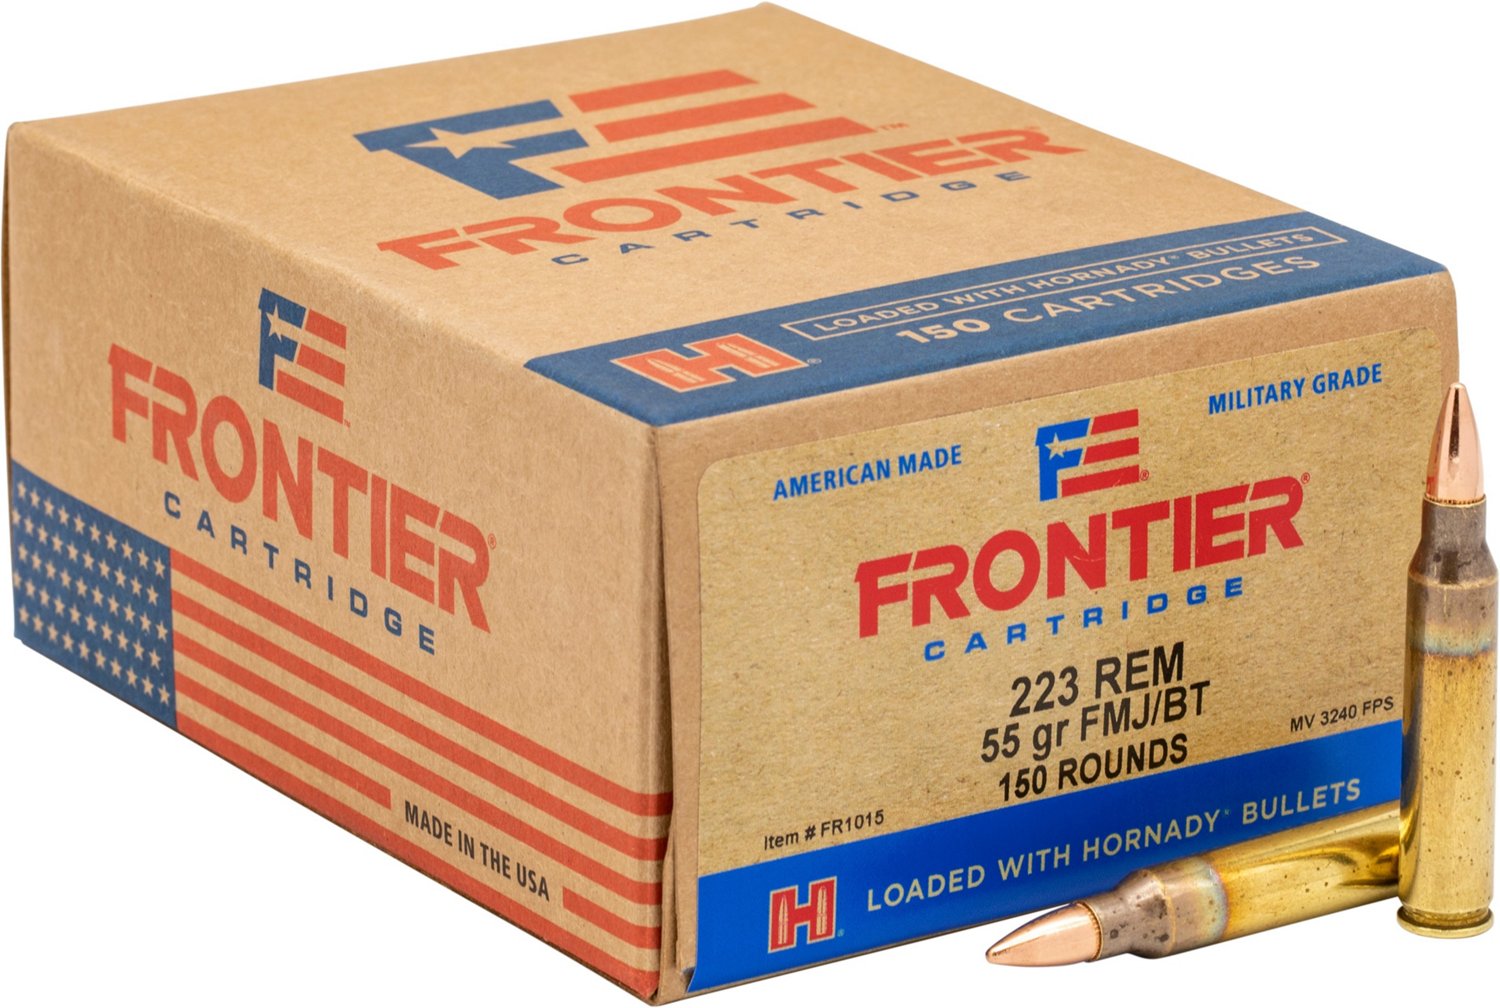 Frontier Fmj Cartridge 223 Remington 55 Grain Rifle Ammunition 150 Rounds Academy 